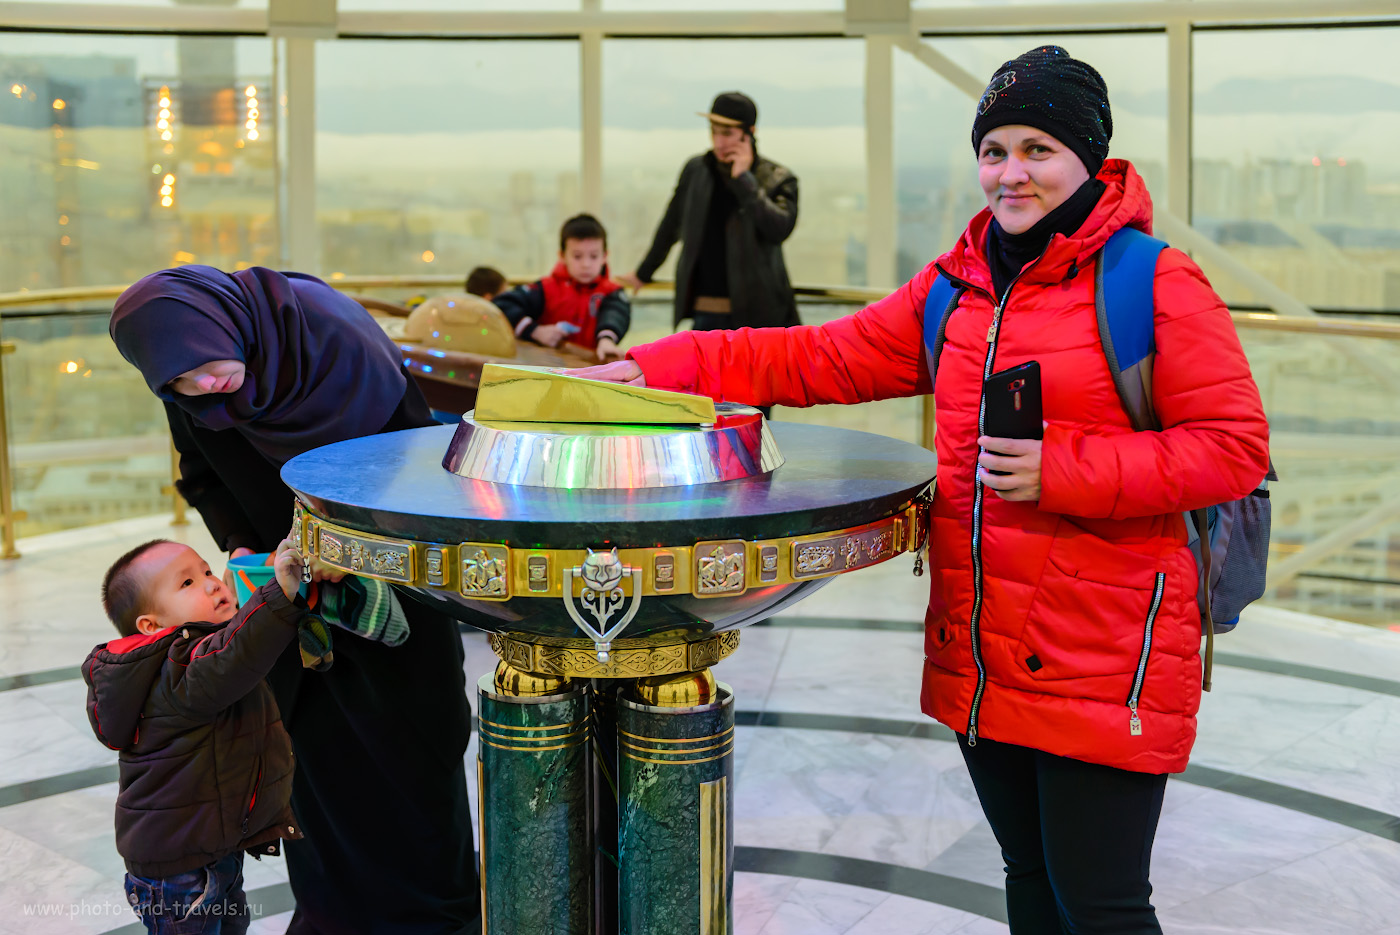 Фото 8. Художественная композиция «Аялы-Алакан» в центре шара монумента «Байтерек» в Астане. Что можно посмотреть за полдня во время пересадки в Казахстане. 1/100, +0.33, 2.8, 1600, 45.